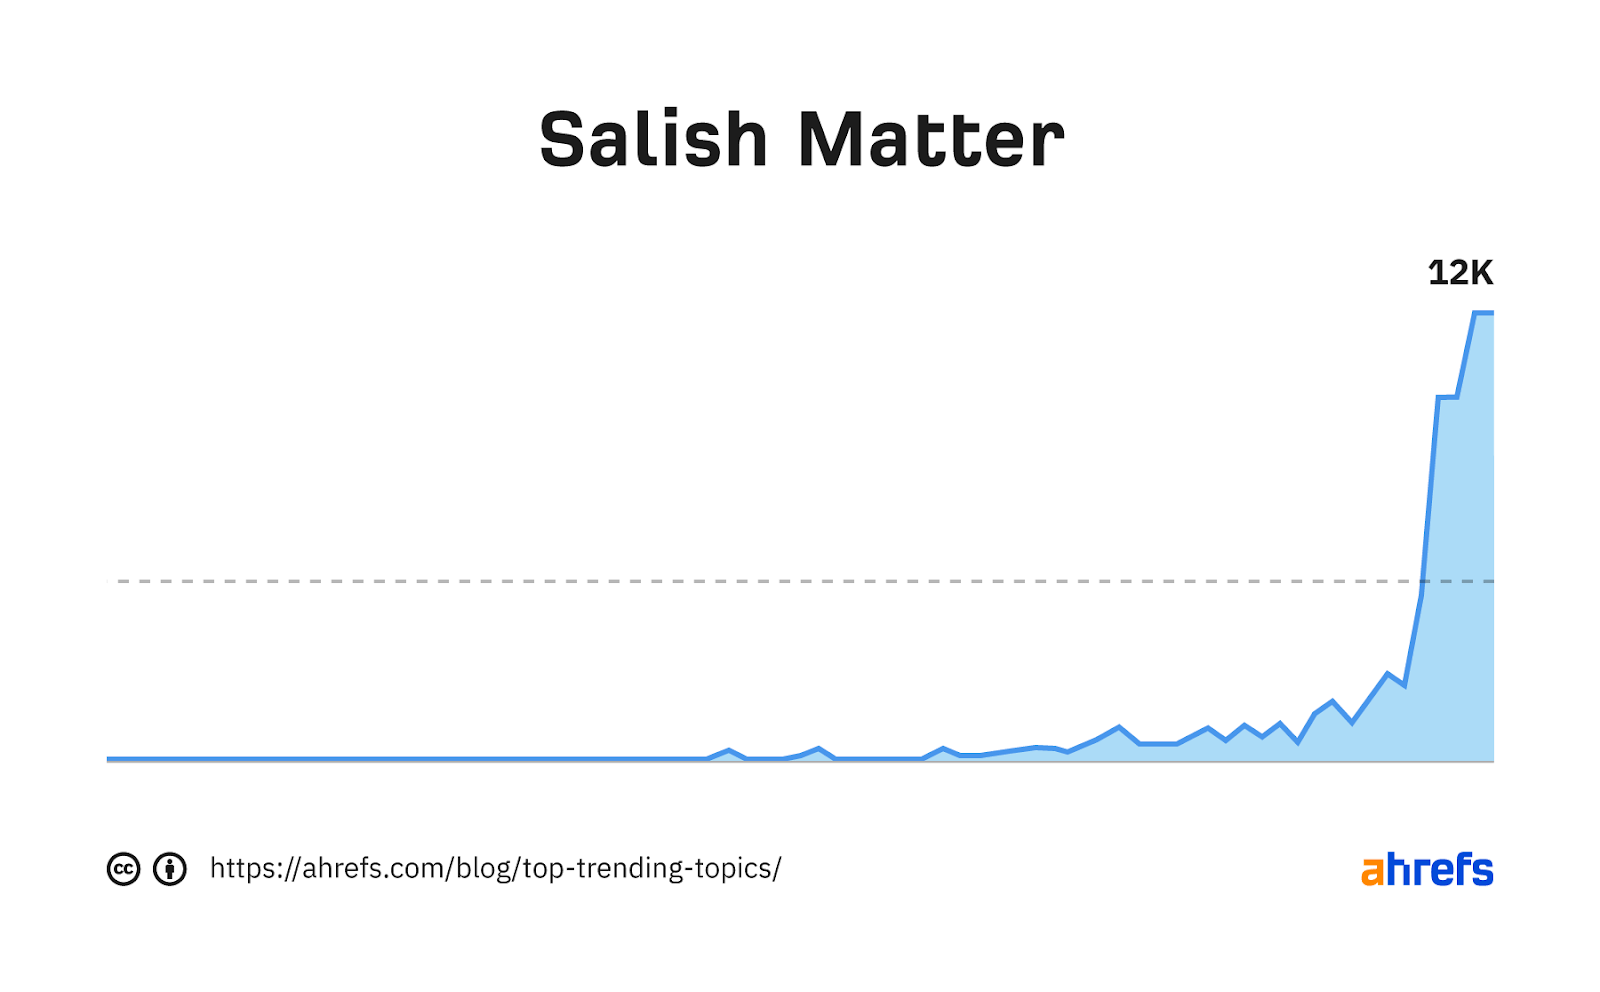 Graphique de tendance pour le mot-clé "matière salish"